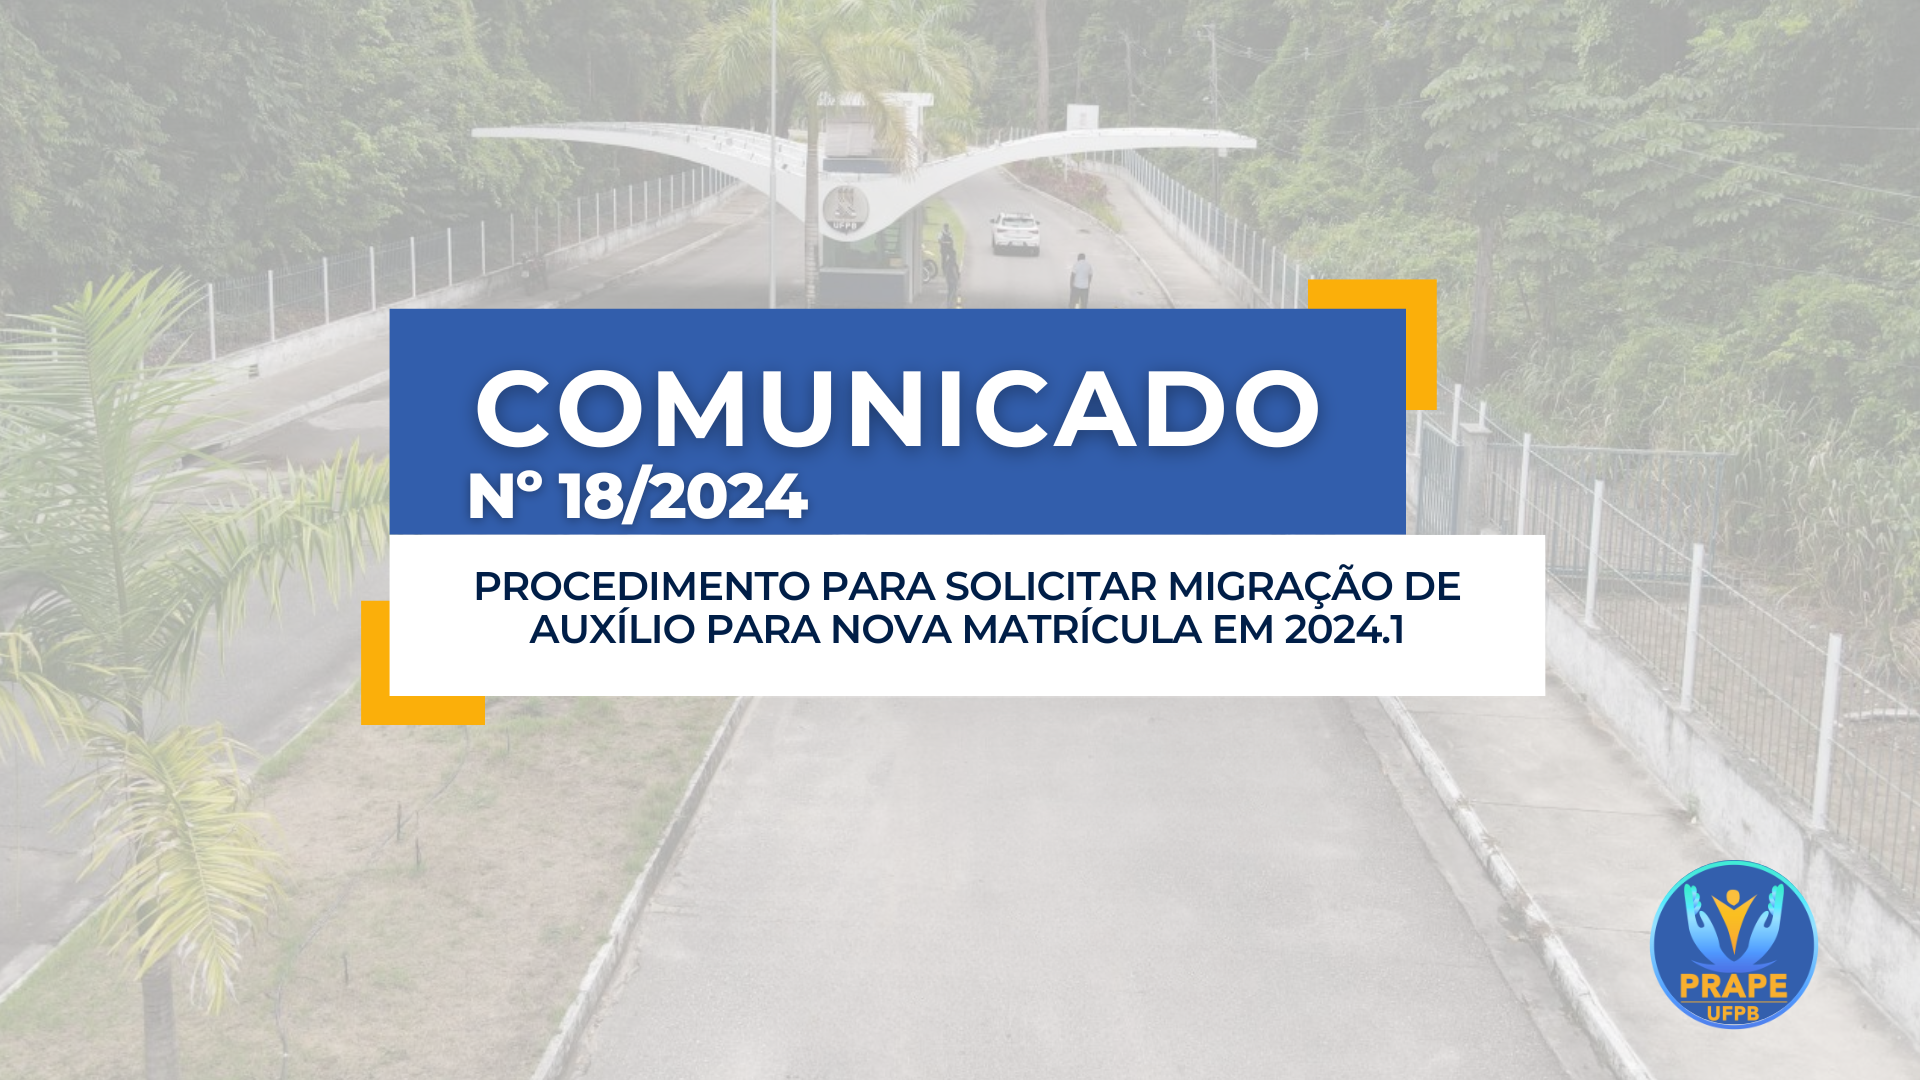 PROCEDIMENTO PARA SOLICITAR MIGRAÇÃO DE AUXÍLIO
PARA NOVA MATRÍCULA EM 2024.1